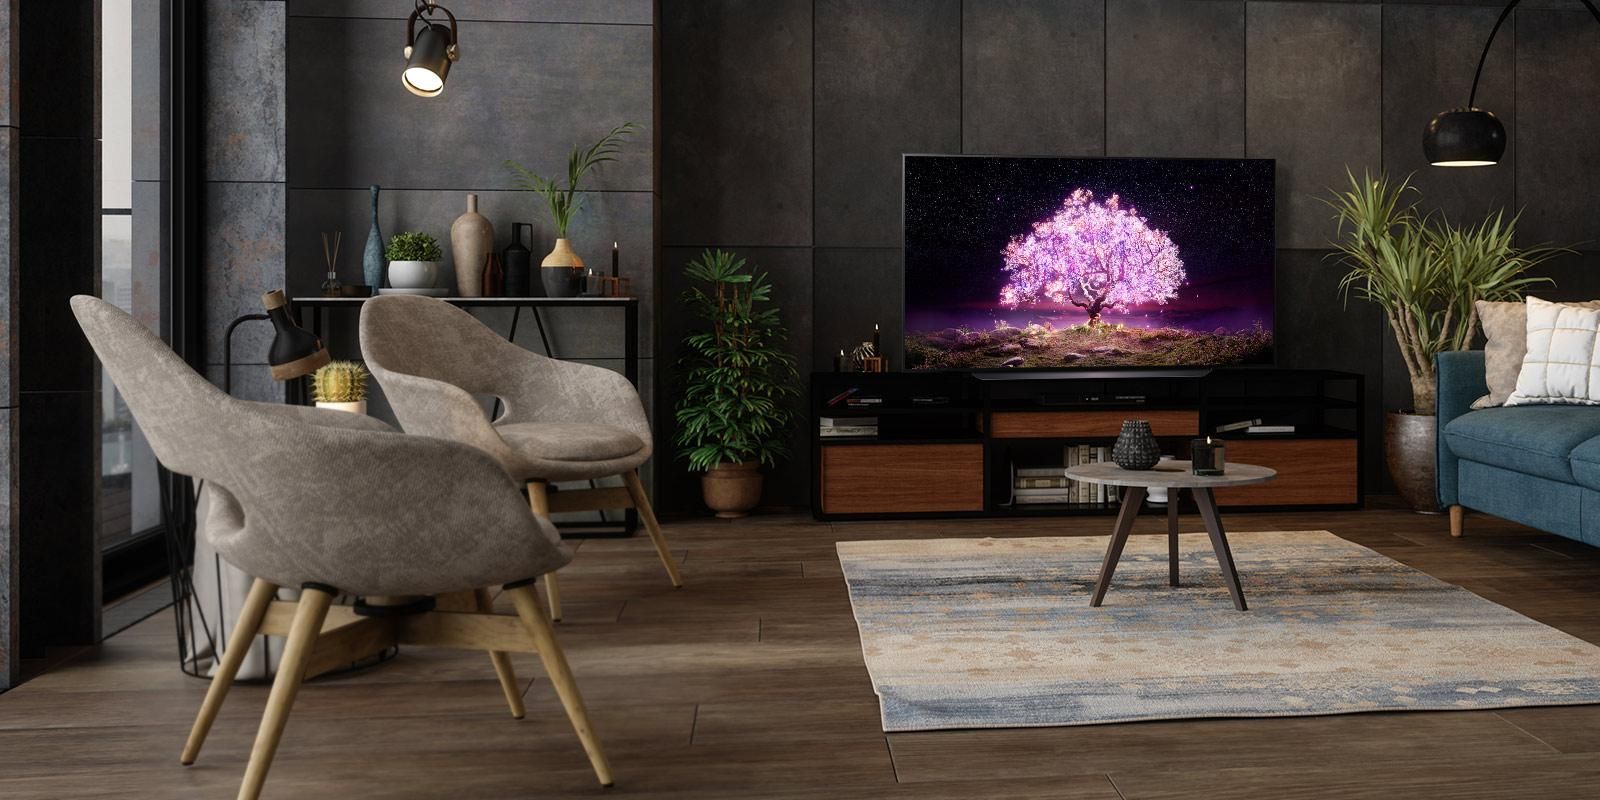 QNED Mini LED, Oled та NanoCell: чим вражають телевізори нової лінійки 2021 року компанії LG